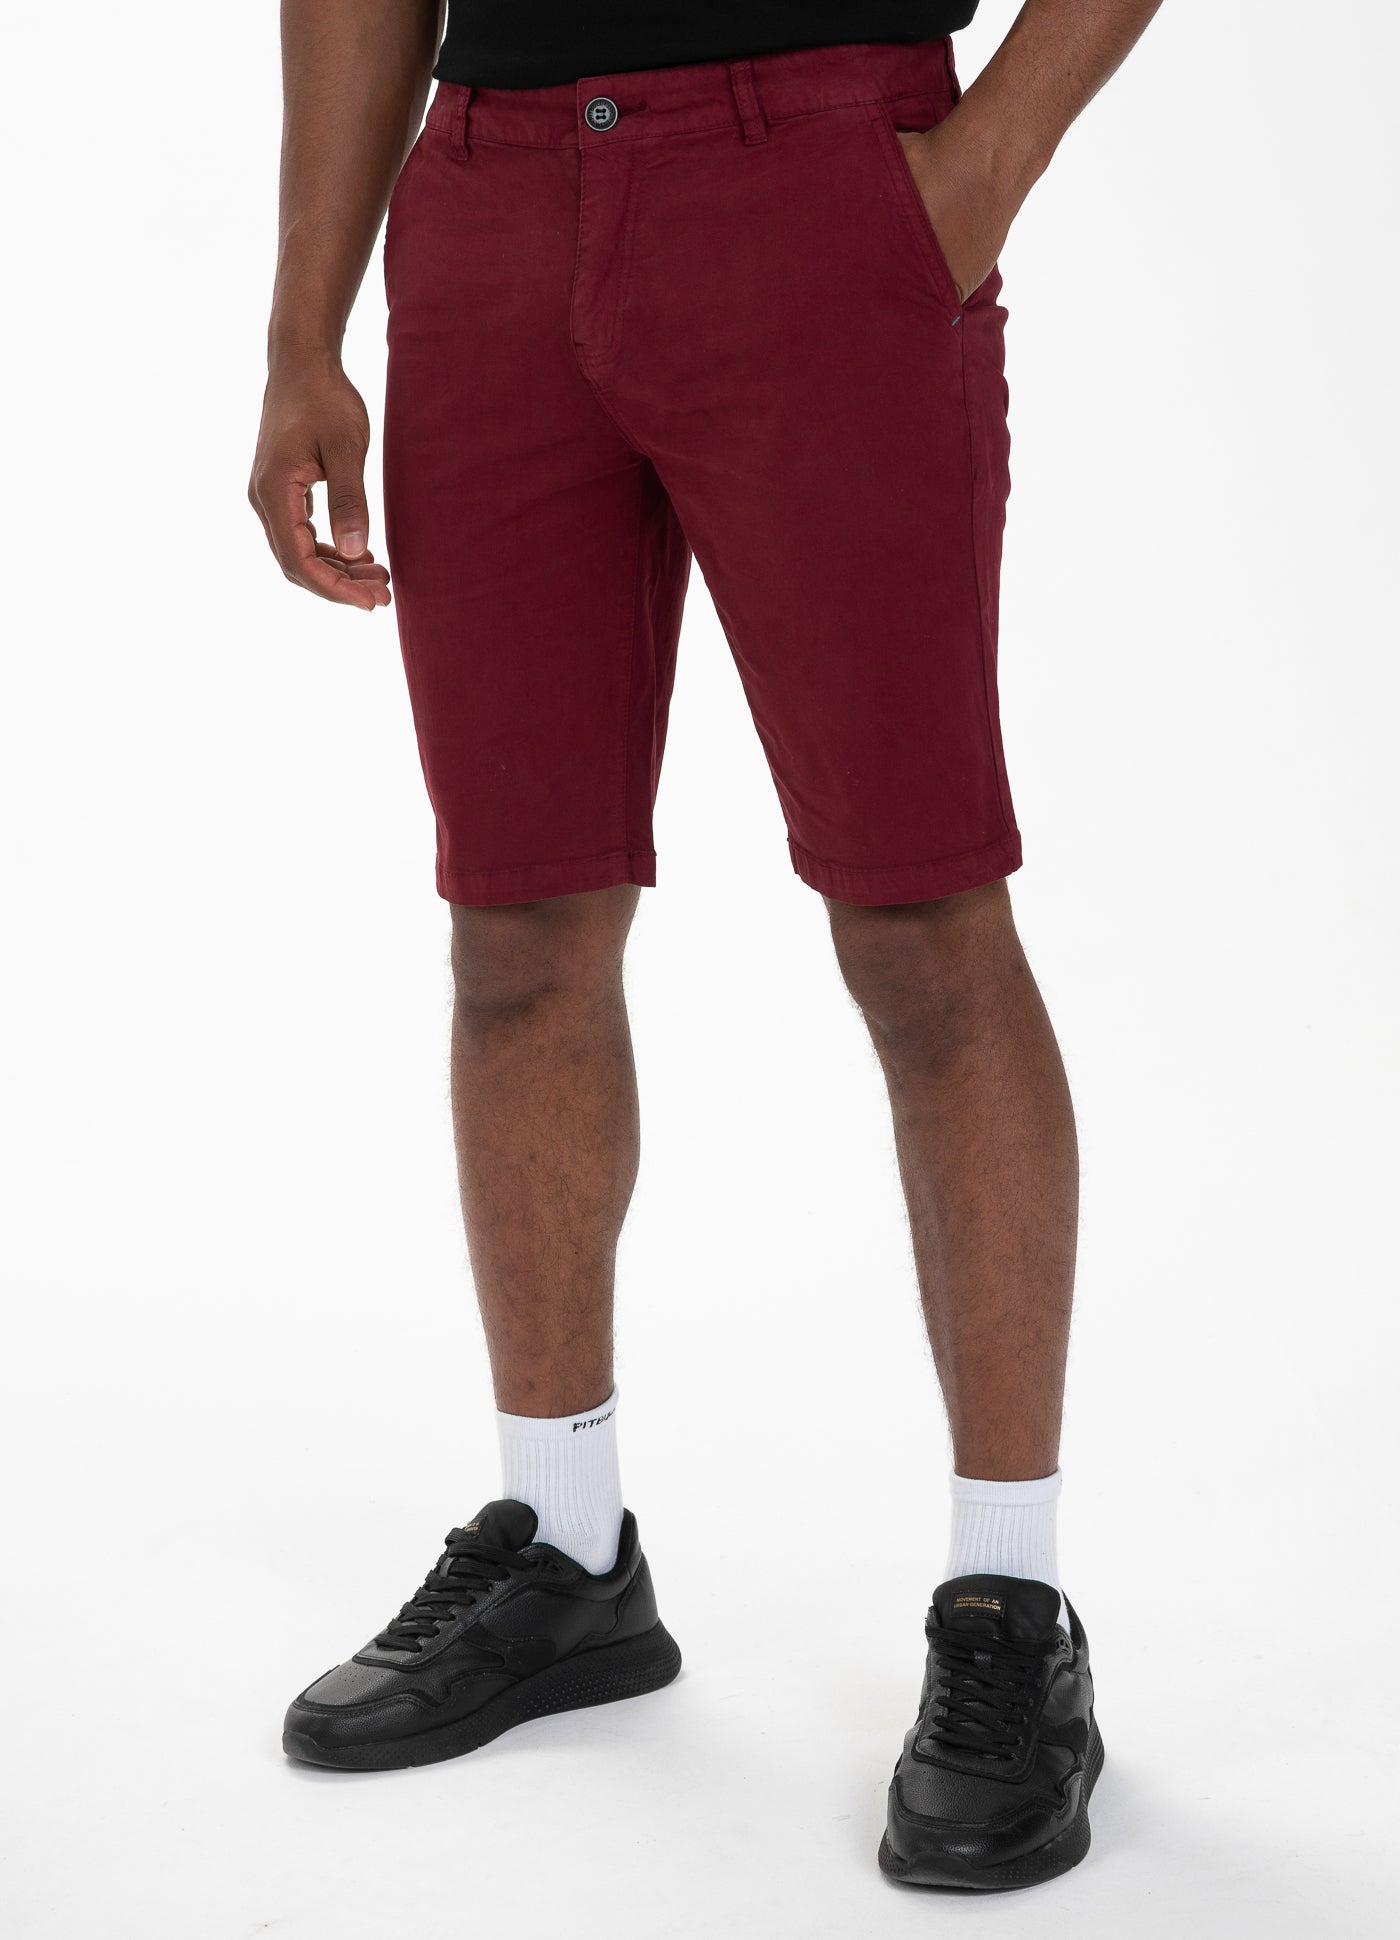 Vermel Burgundy Shorts